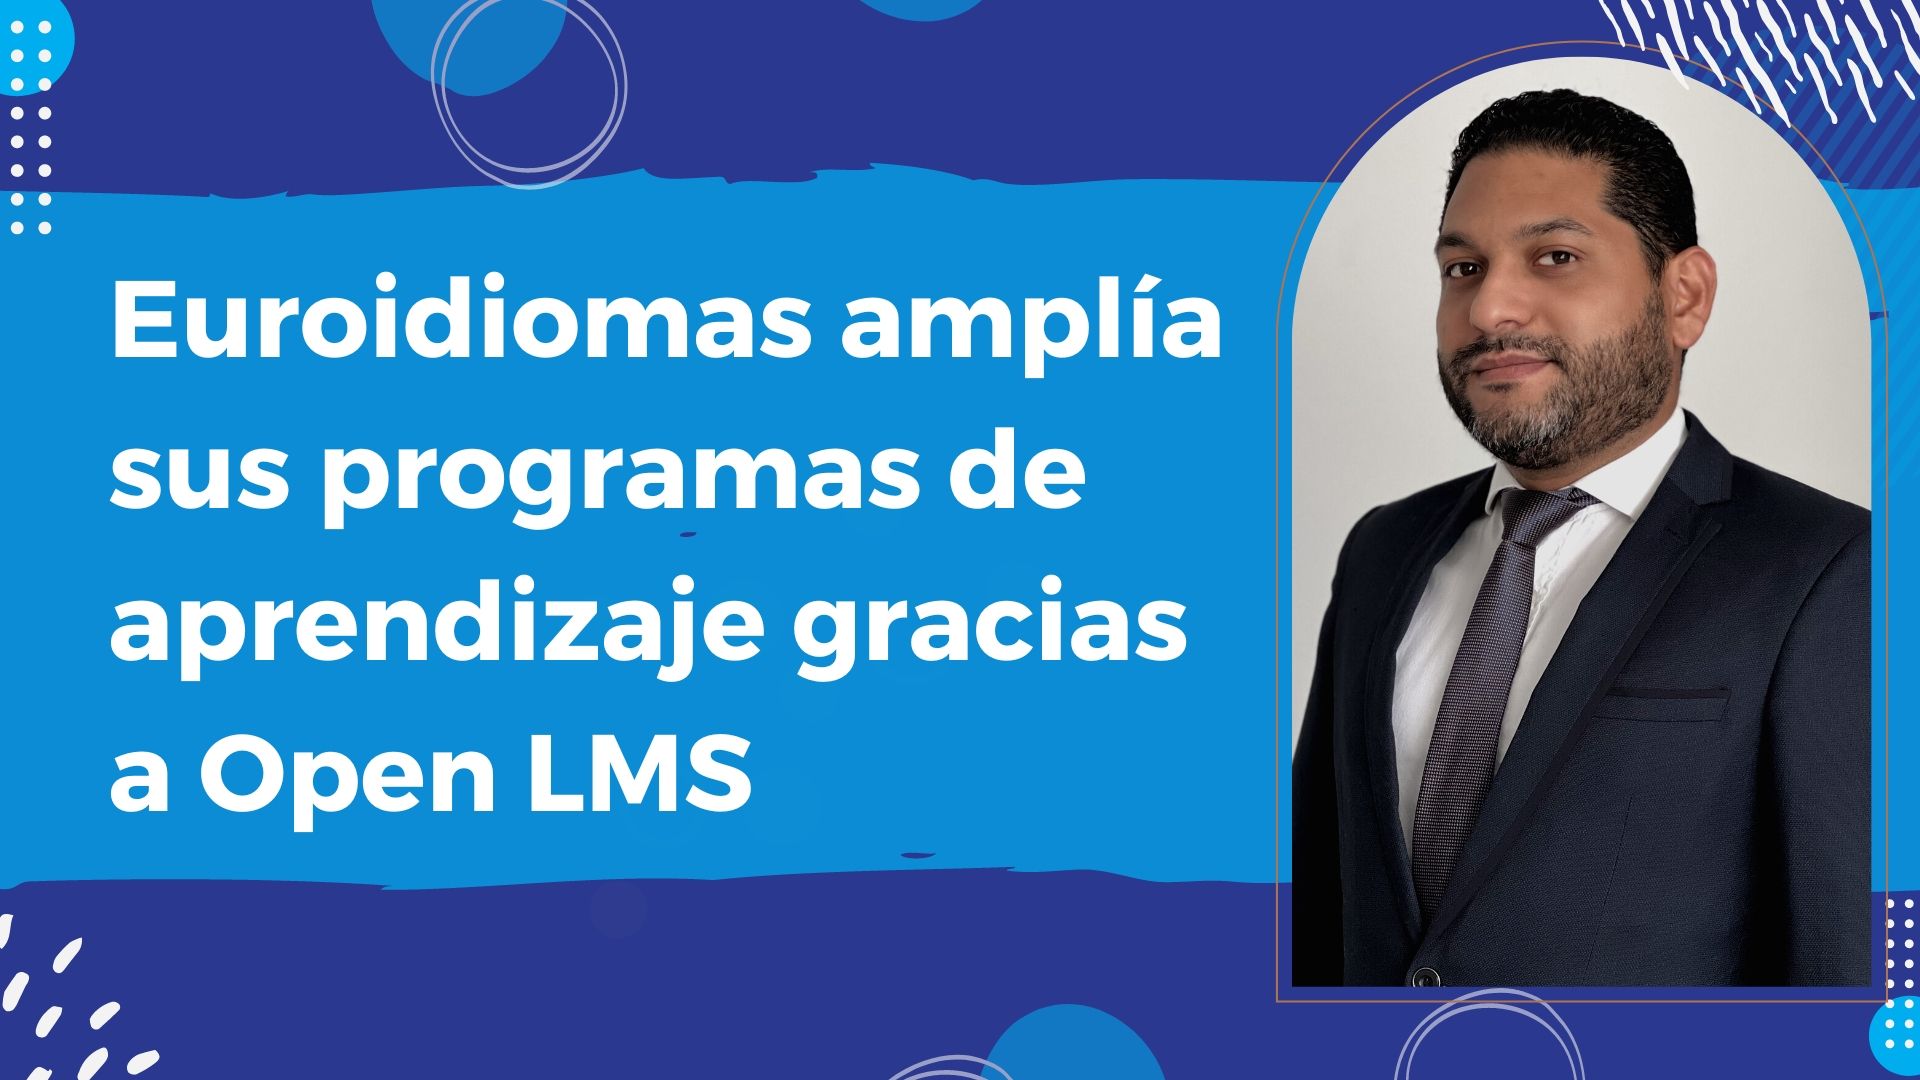 Euroidiomas amplía sus programas de aprendizaje gracias a Open LMS